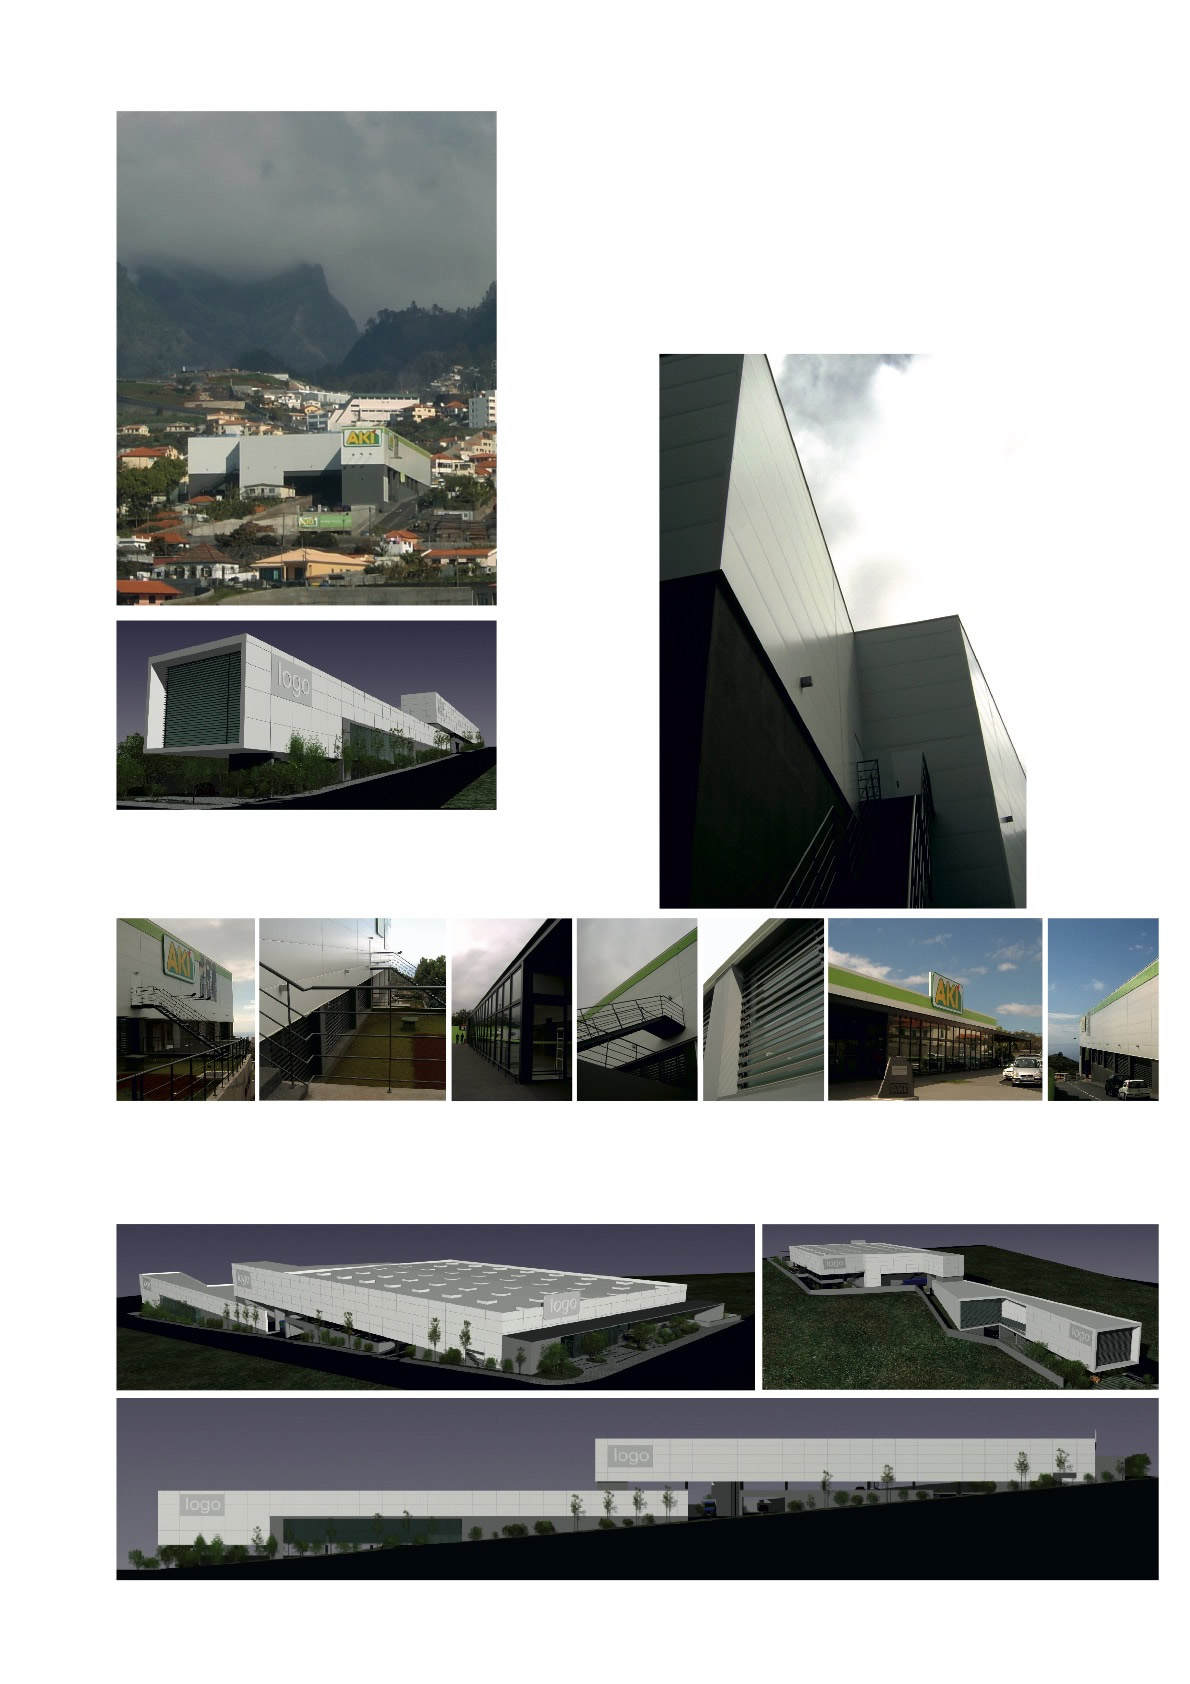 Loja AKI Funchal, Madeira - Brimogal, Sociedade Imobiliária S.A. - 16.200 m2 de construção e 410 lugares de estacionamento em parcela de 9.660 m2.